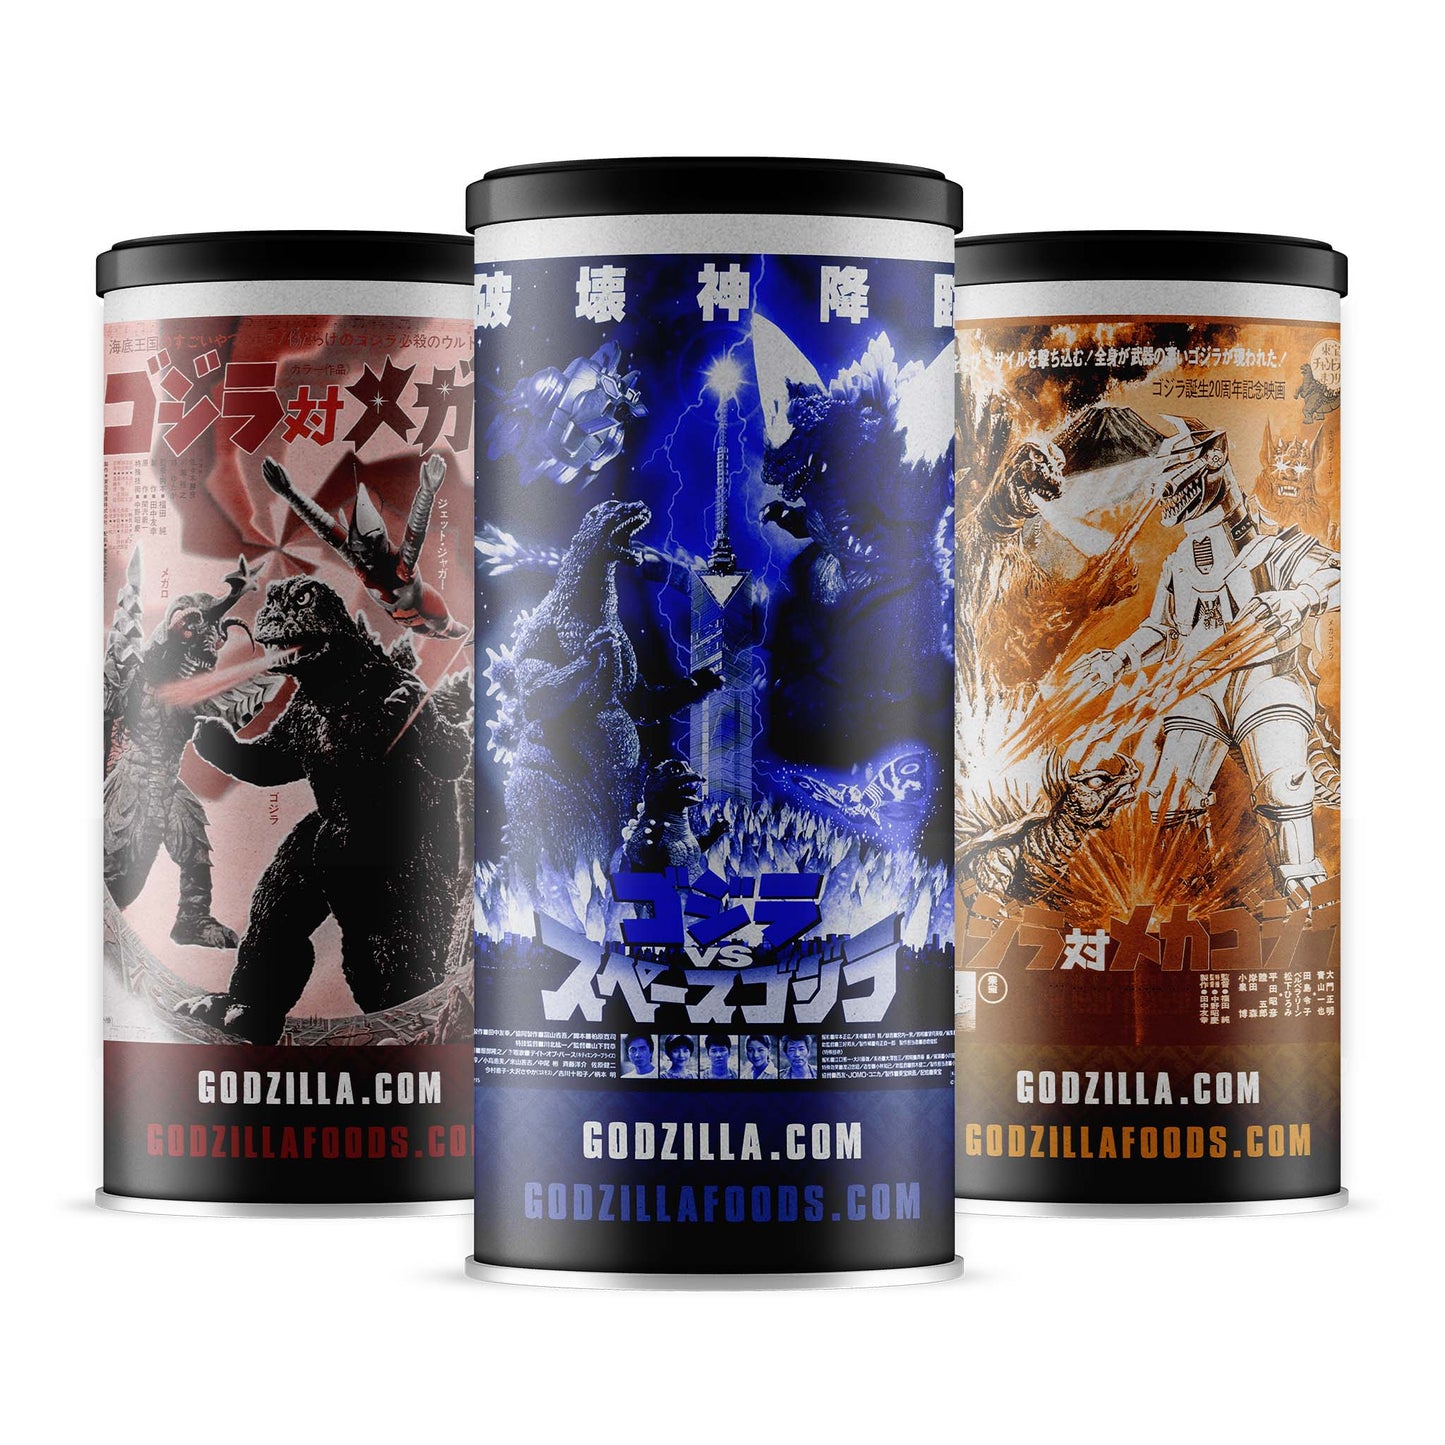 Godzilla's Hot Cocoa 3-Pack